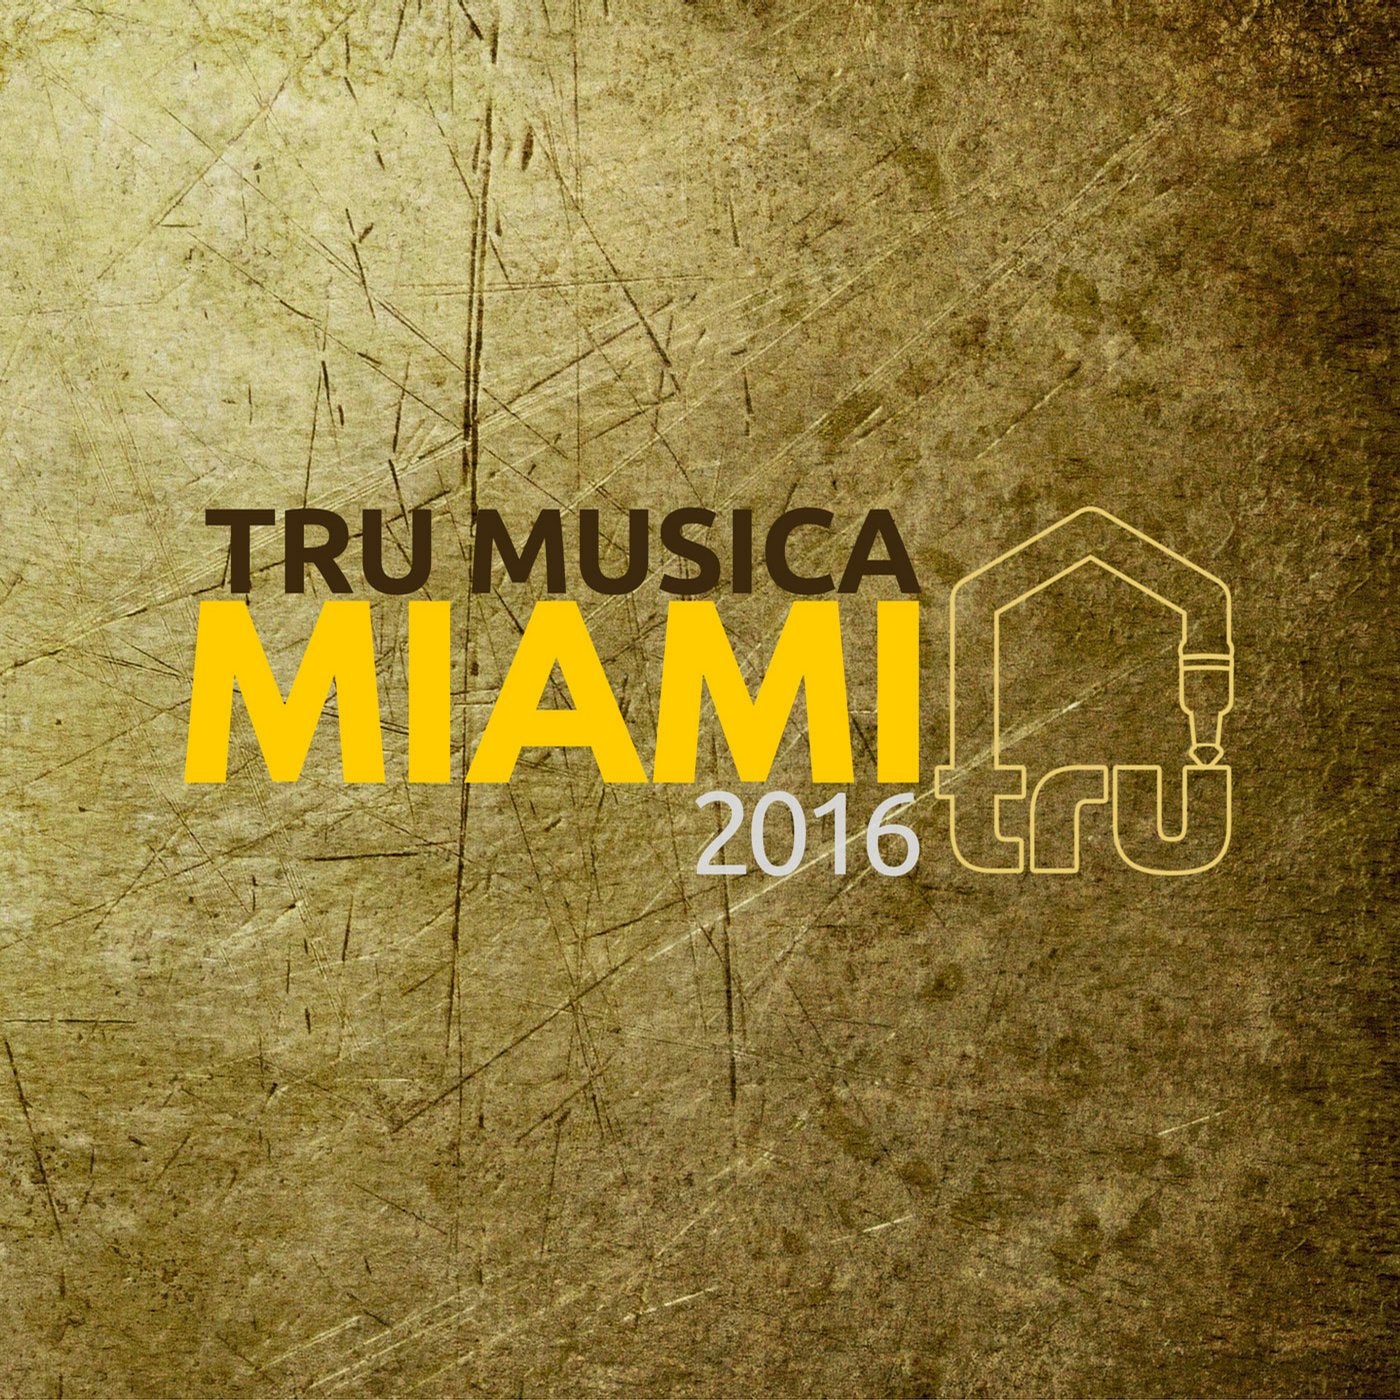 Tru Musica Miami 2016